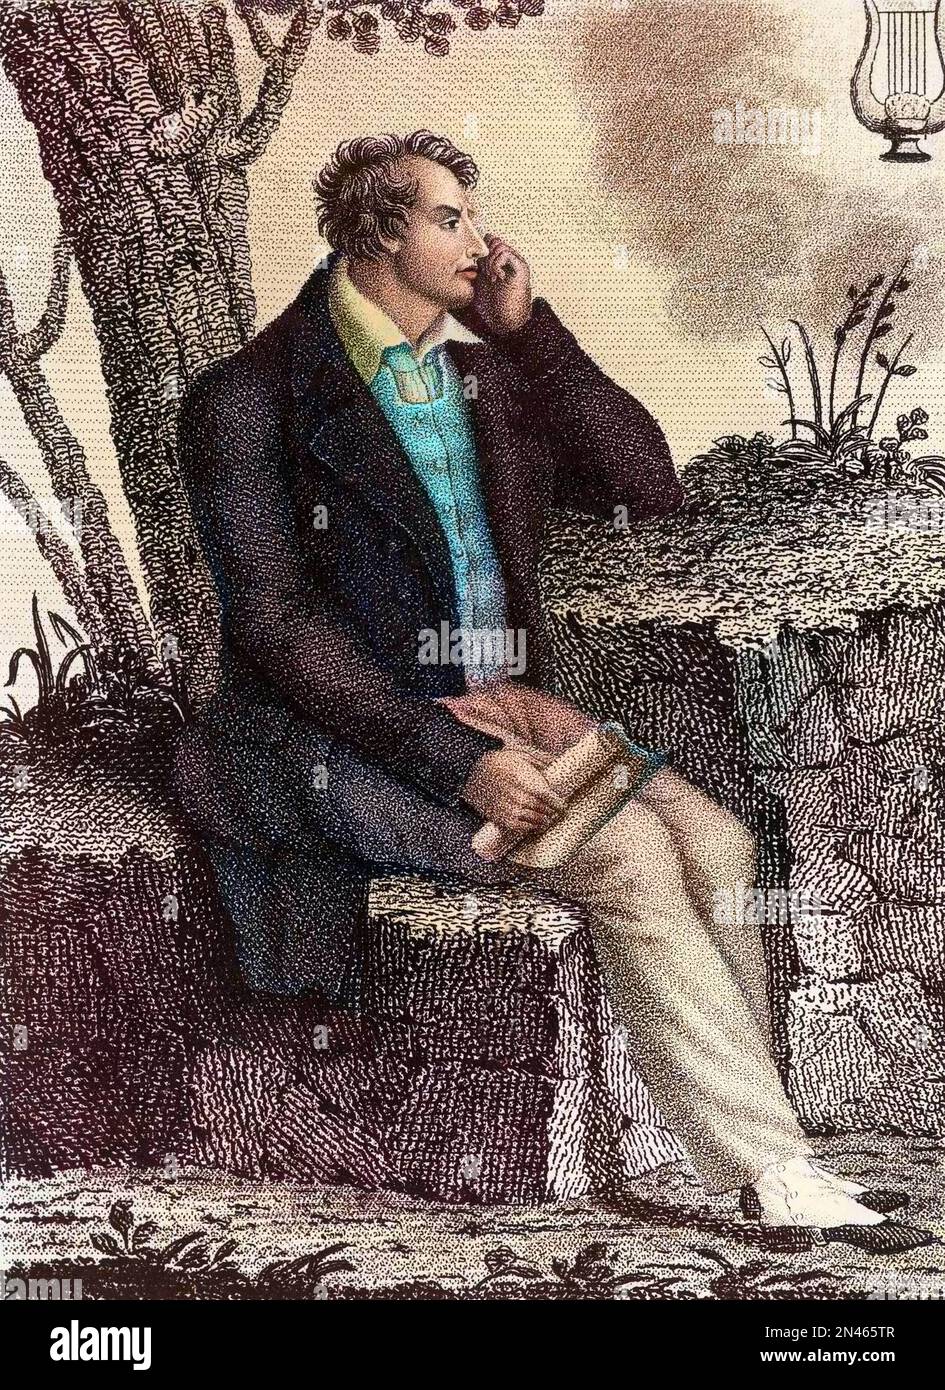 Portrait de George Gordon Byron (1788-1824) - Portrait de George Gordon Noel, 6E Baron Byron dit Lord Byron (1788-1824), poete romantique anglais. Banque D'Images